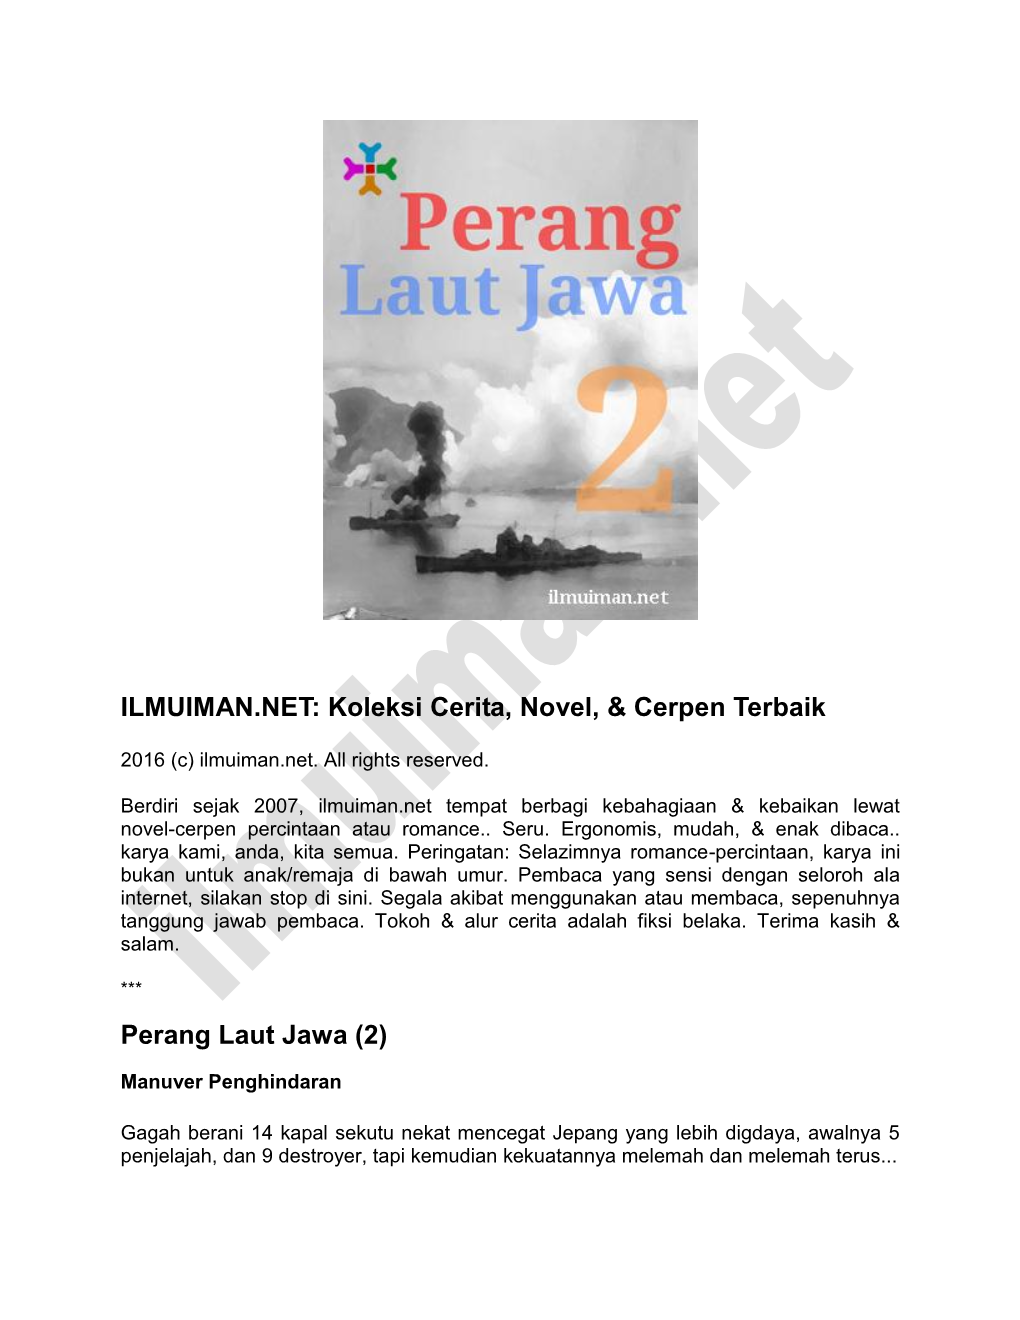 Perang Laut Jawa (2)